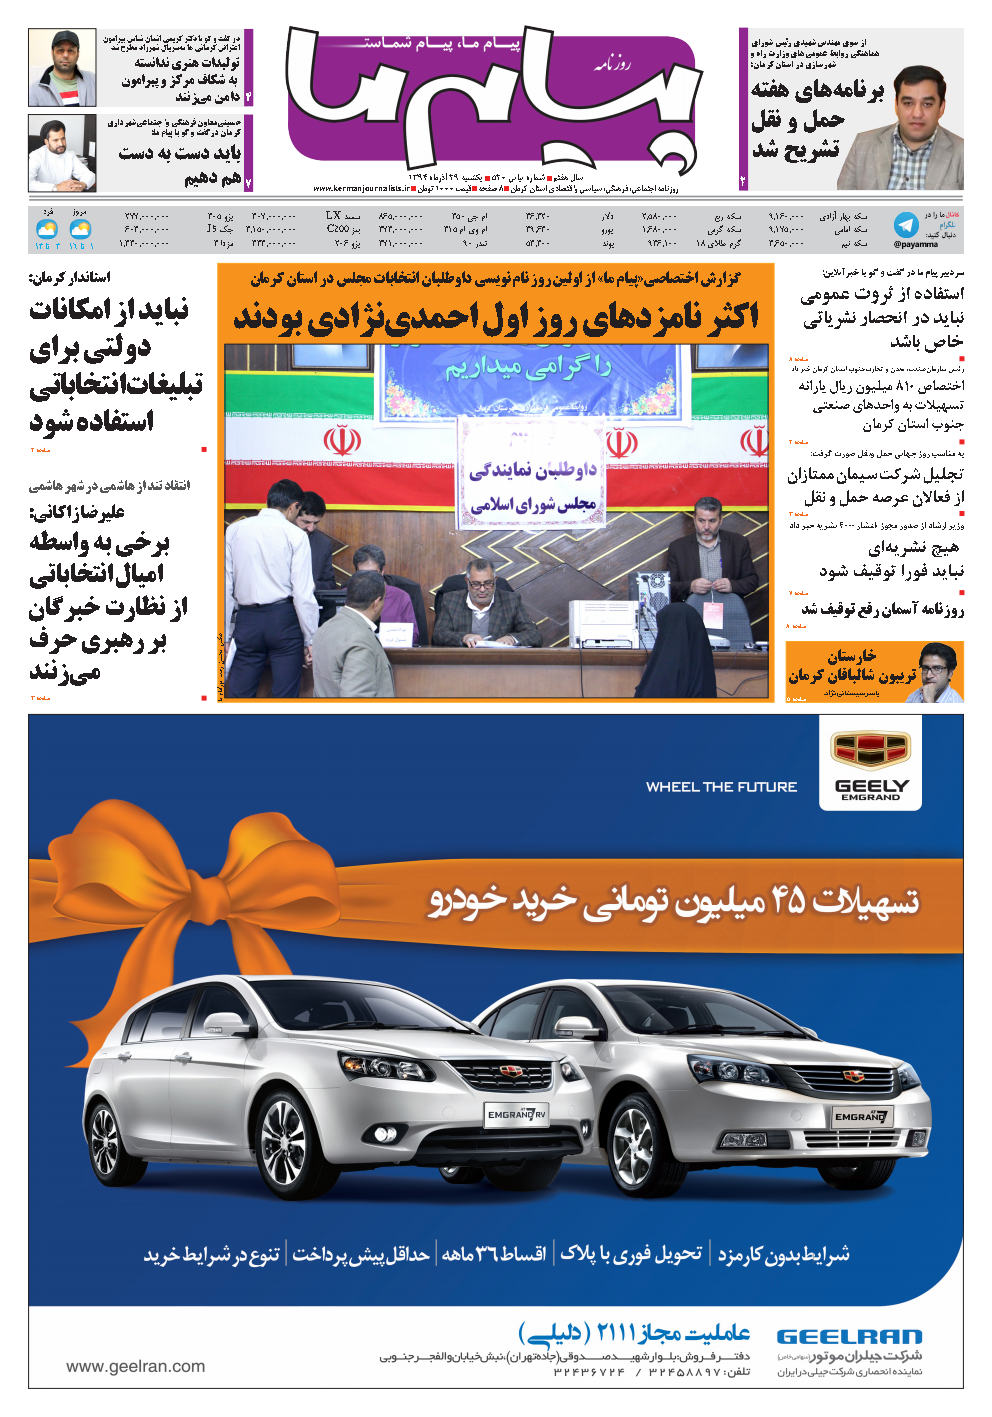 رئیس سازمان صنعت، معدن و تجارت جنوب استان کرمان خبر داد اختصاص 810 میلیون ریال یارانه تسهیلات به واحدهای صنعتی جنوب استان کرمان